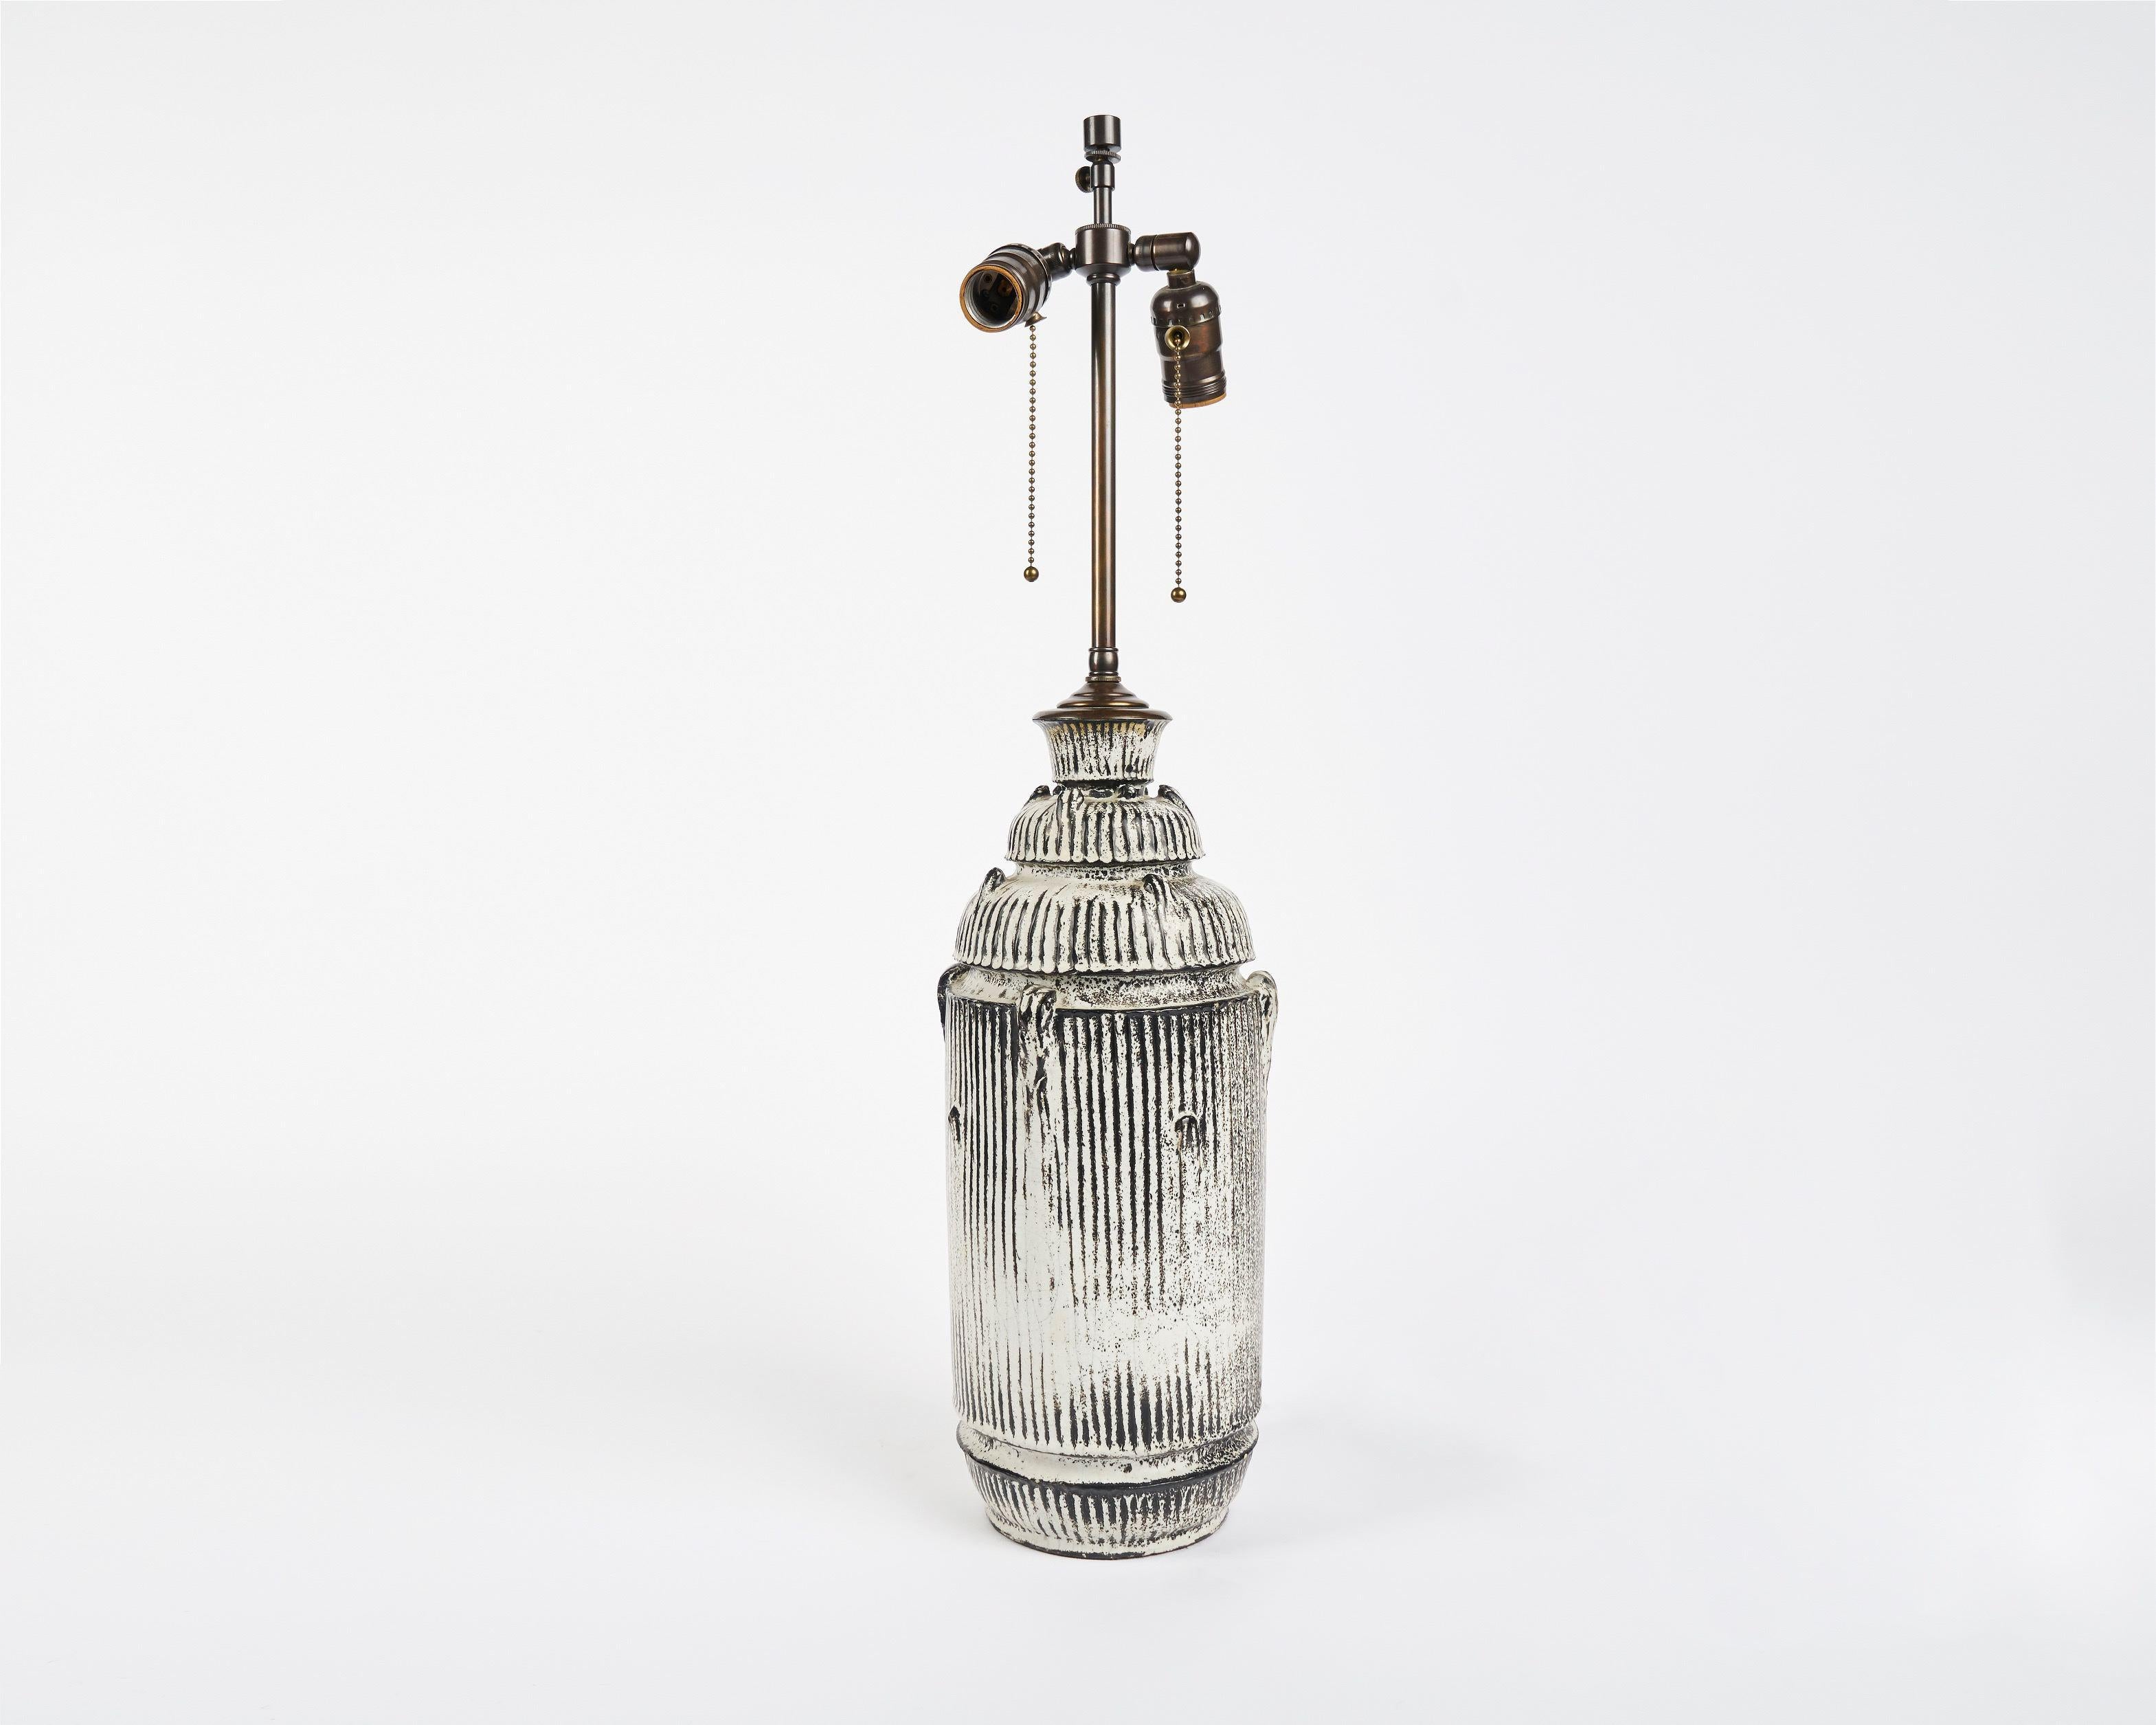 Svend Hammershøi, Keramische Tischlampe, Dänemark, um 1925 (Glasiert)